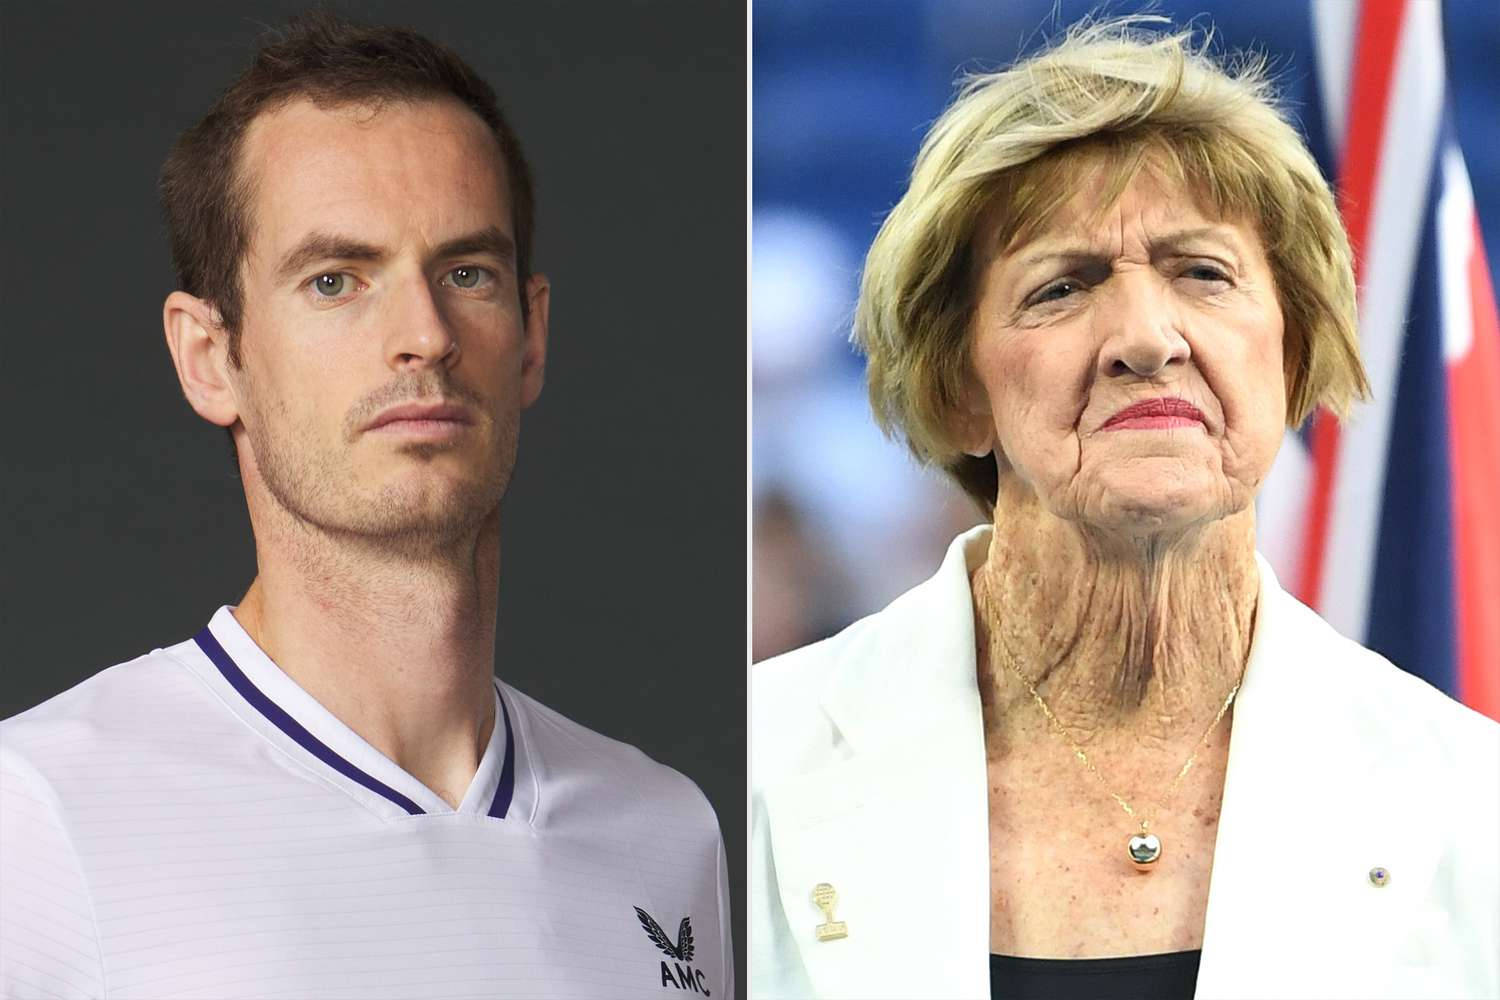 Leggendedel Tennis Andy Murray E Margaret Court In Un Momento Spontaneo Sfondo